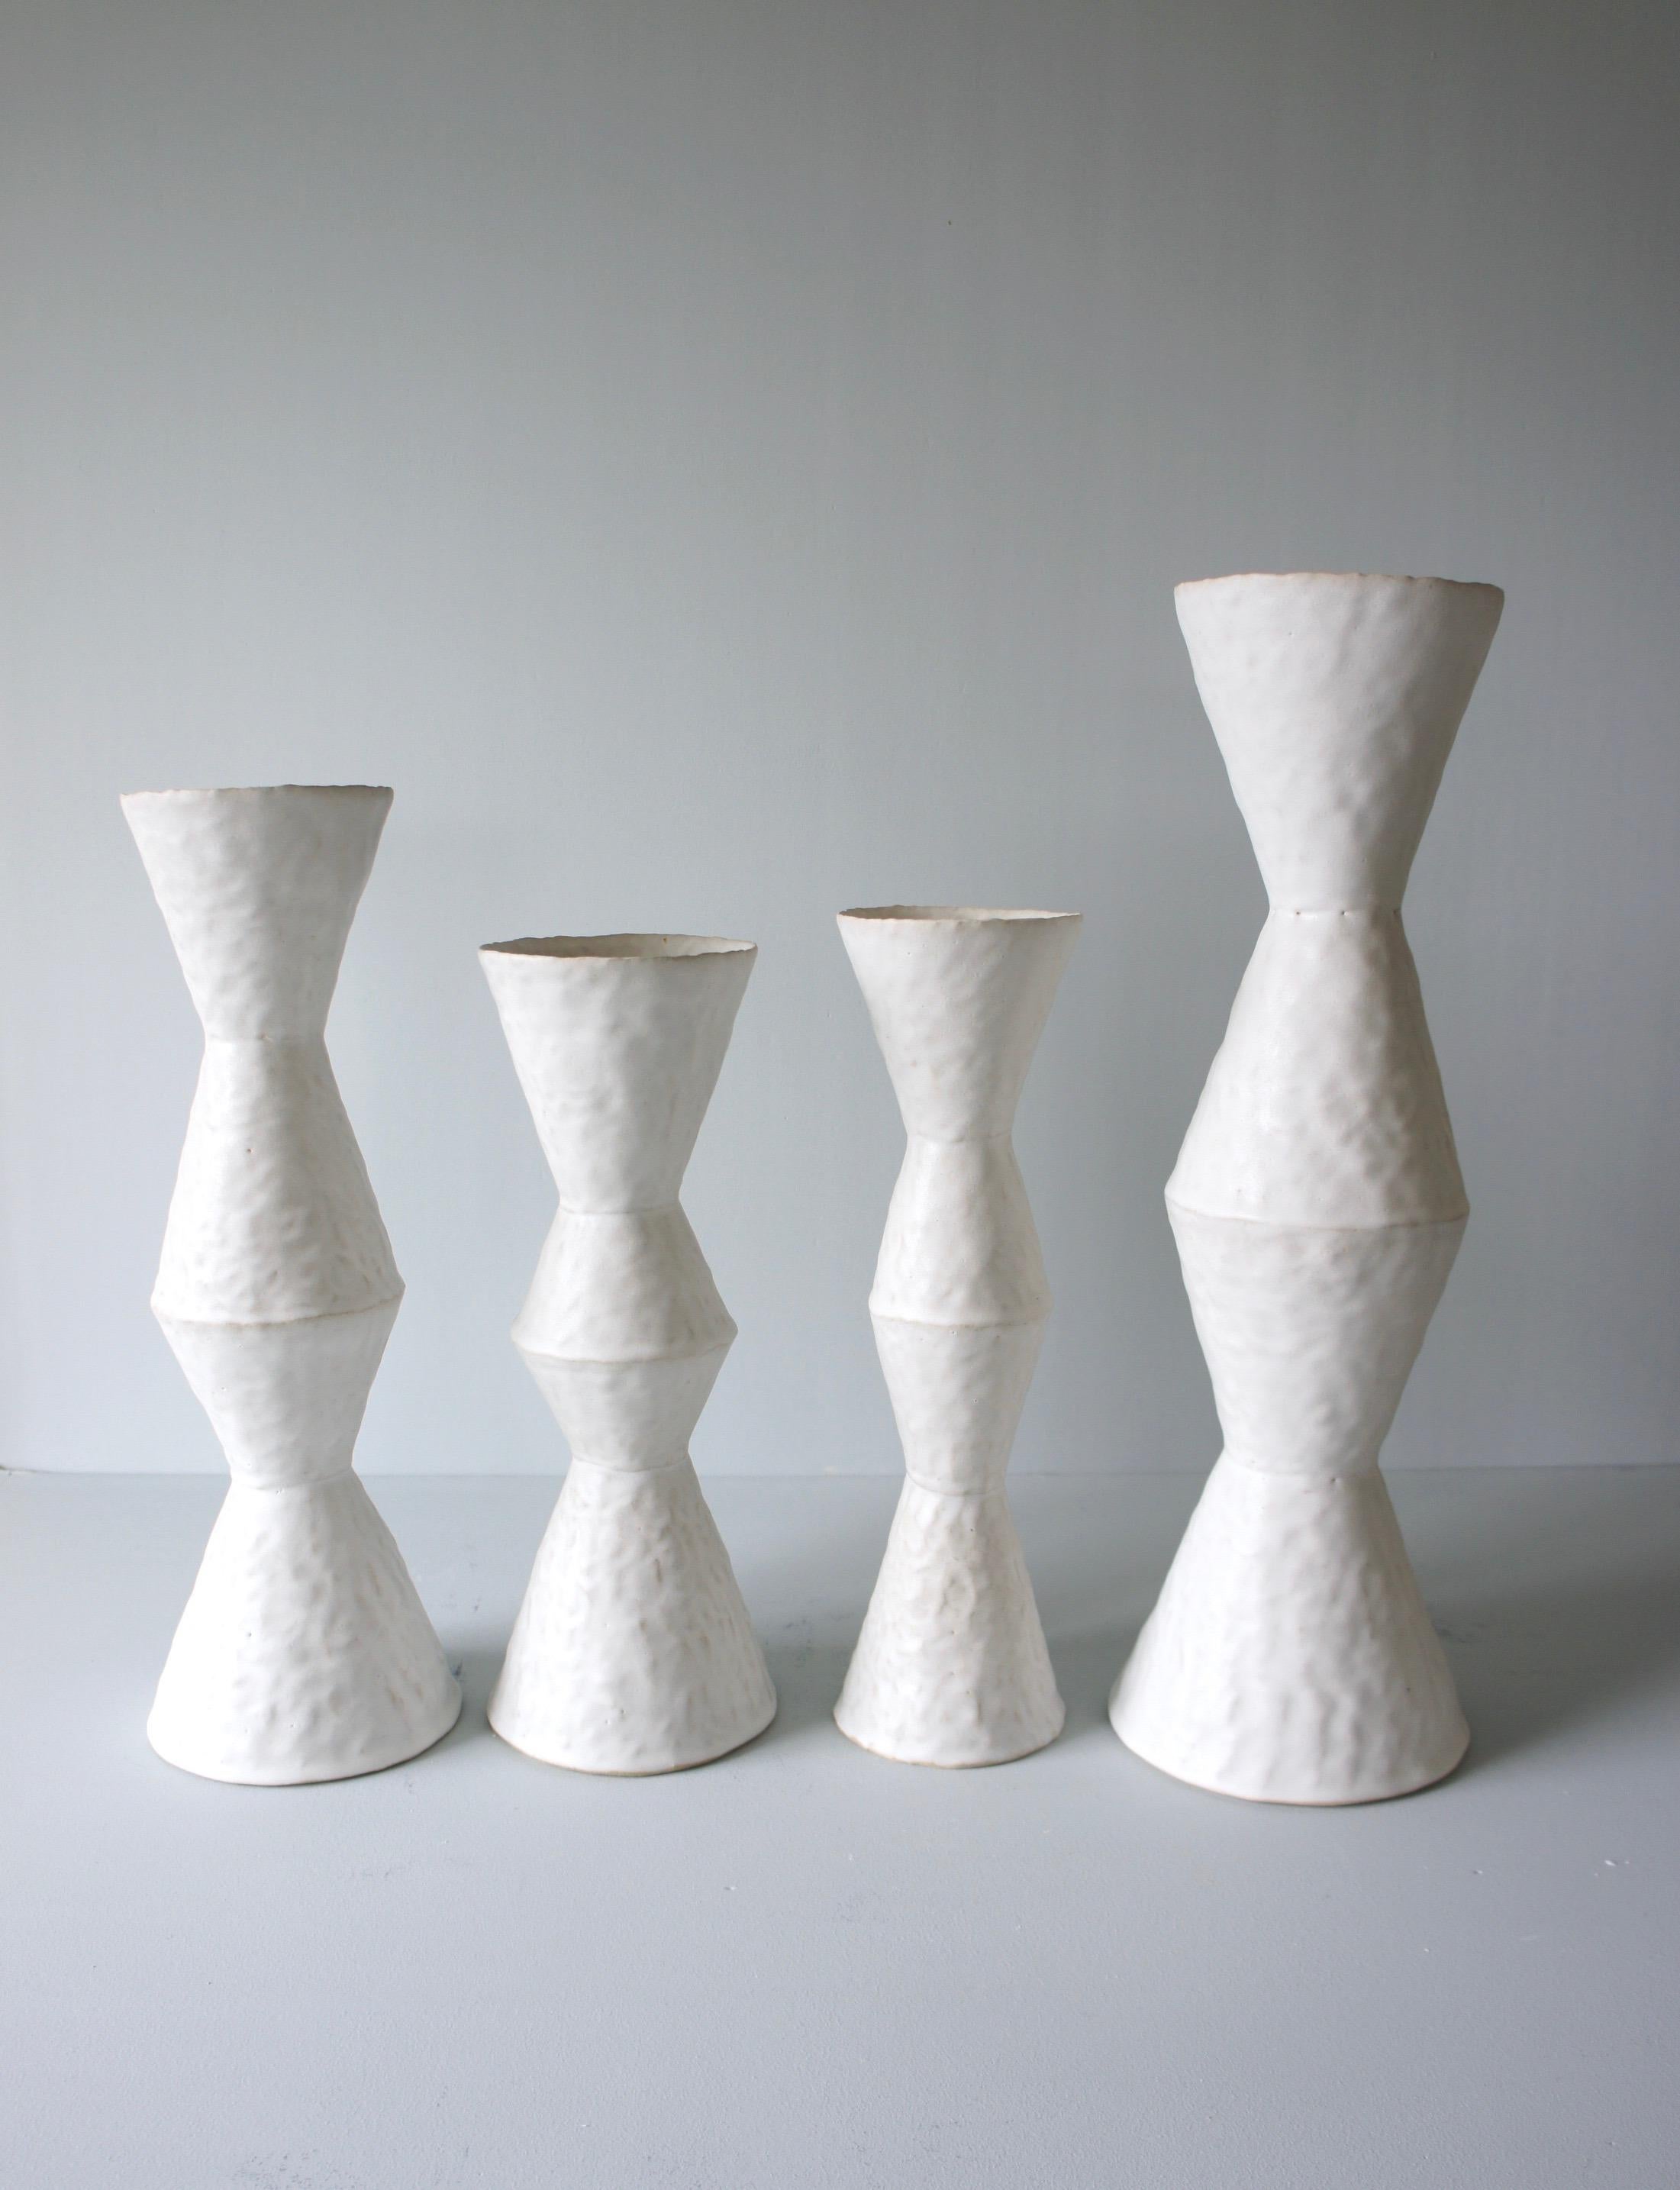 Glazed Giselle Hicks Contemporary White Ceramic Vase, 2019